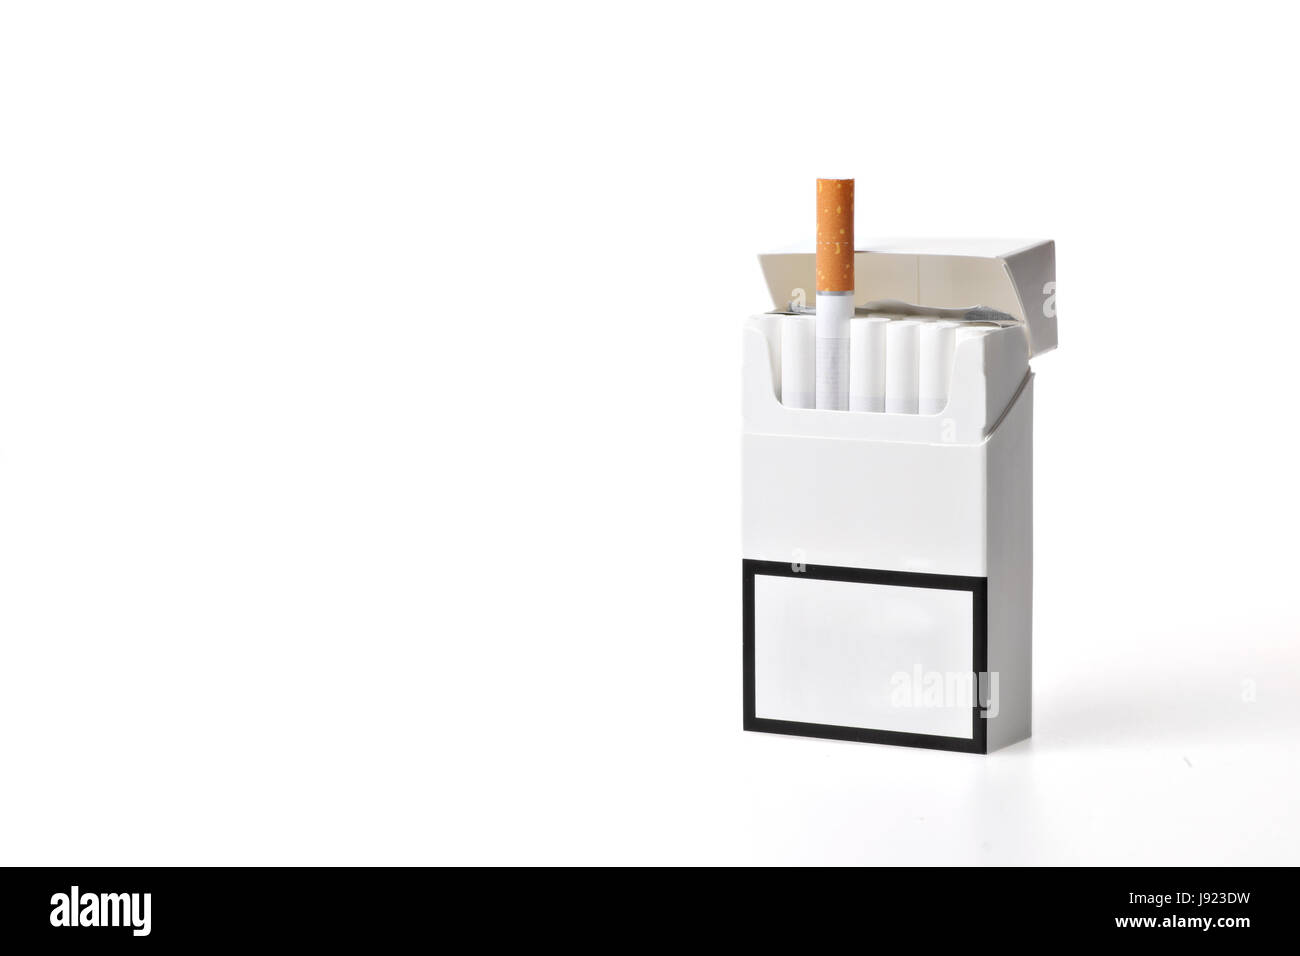 Cigarrillo, solo, una excepción, fumador, olor, humo, tabaco, pack, Foto de stock